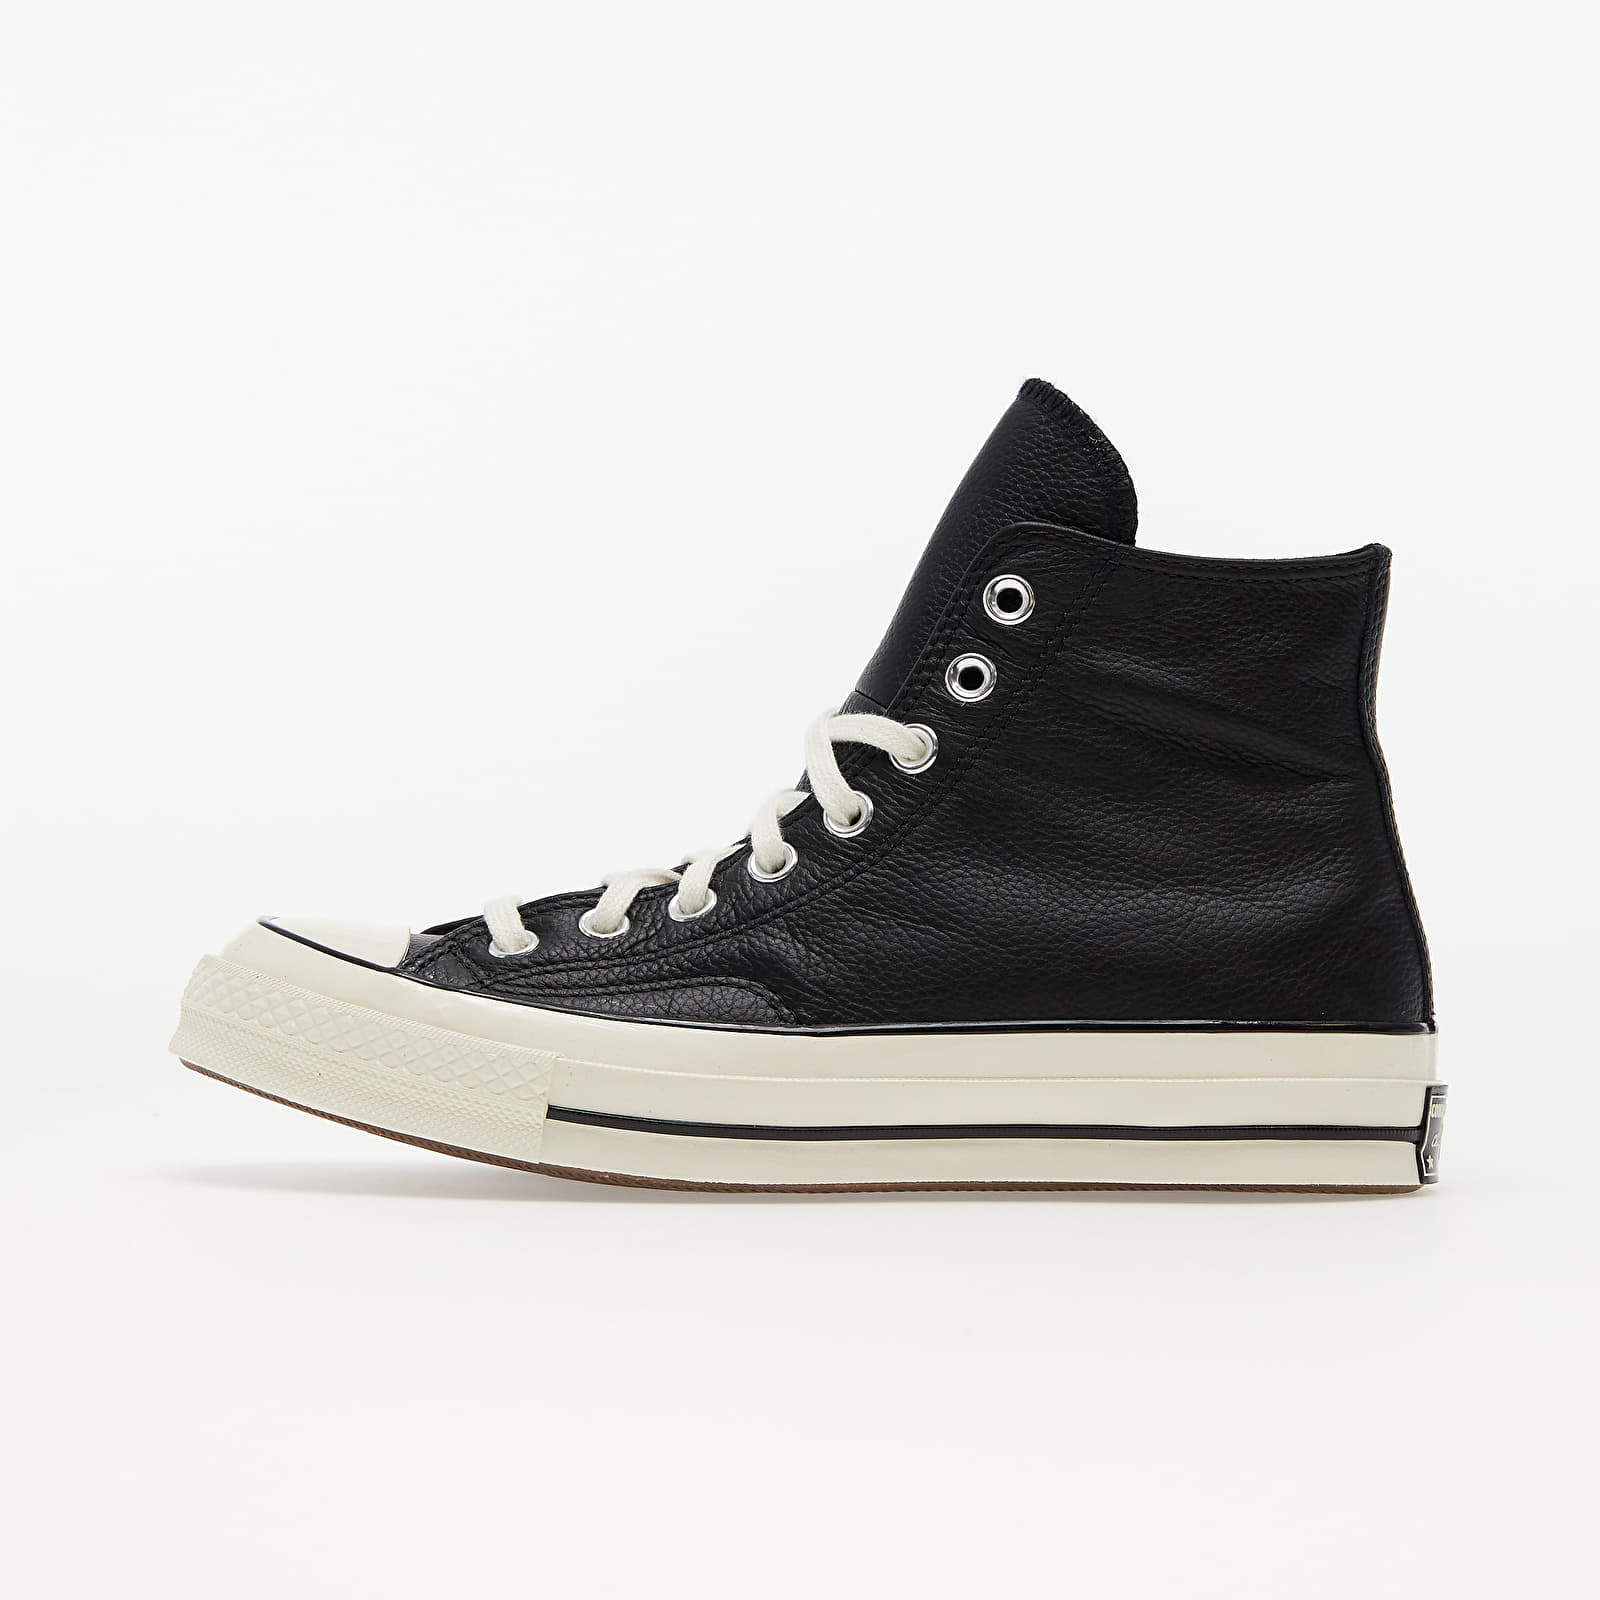 Men's shoes Converse Chuck 70 Leather Black/ Egret/ Black